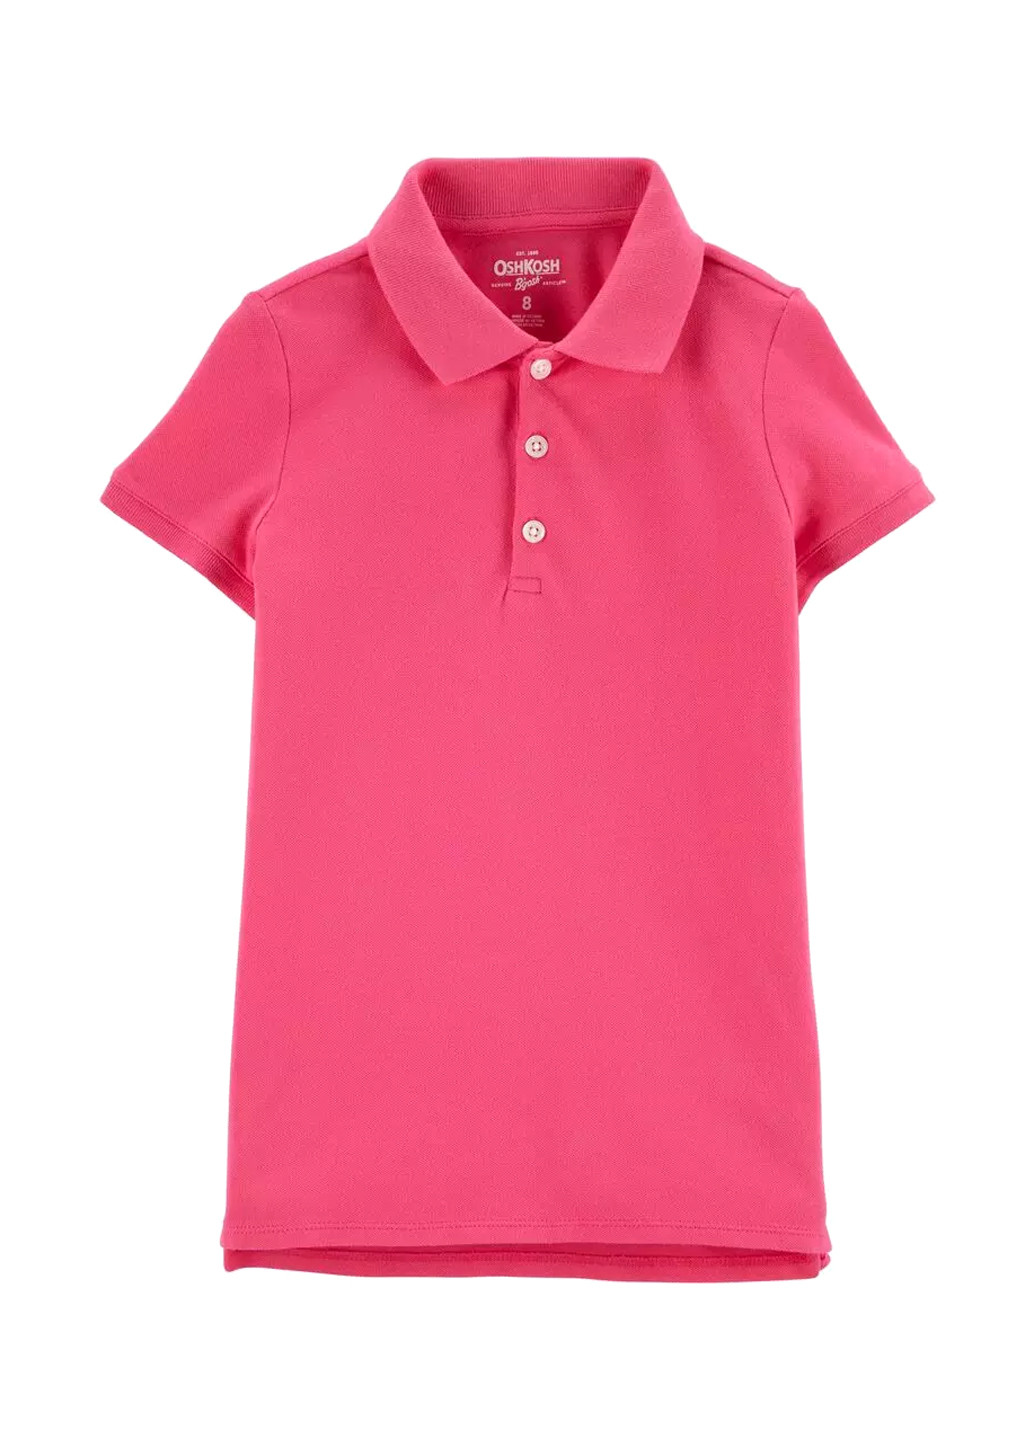 Розовая детская футболка-поло для девочки OshKosh однотонная